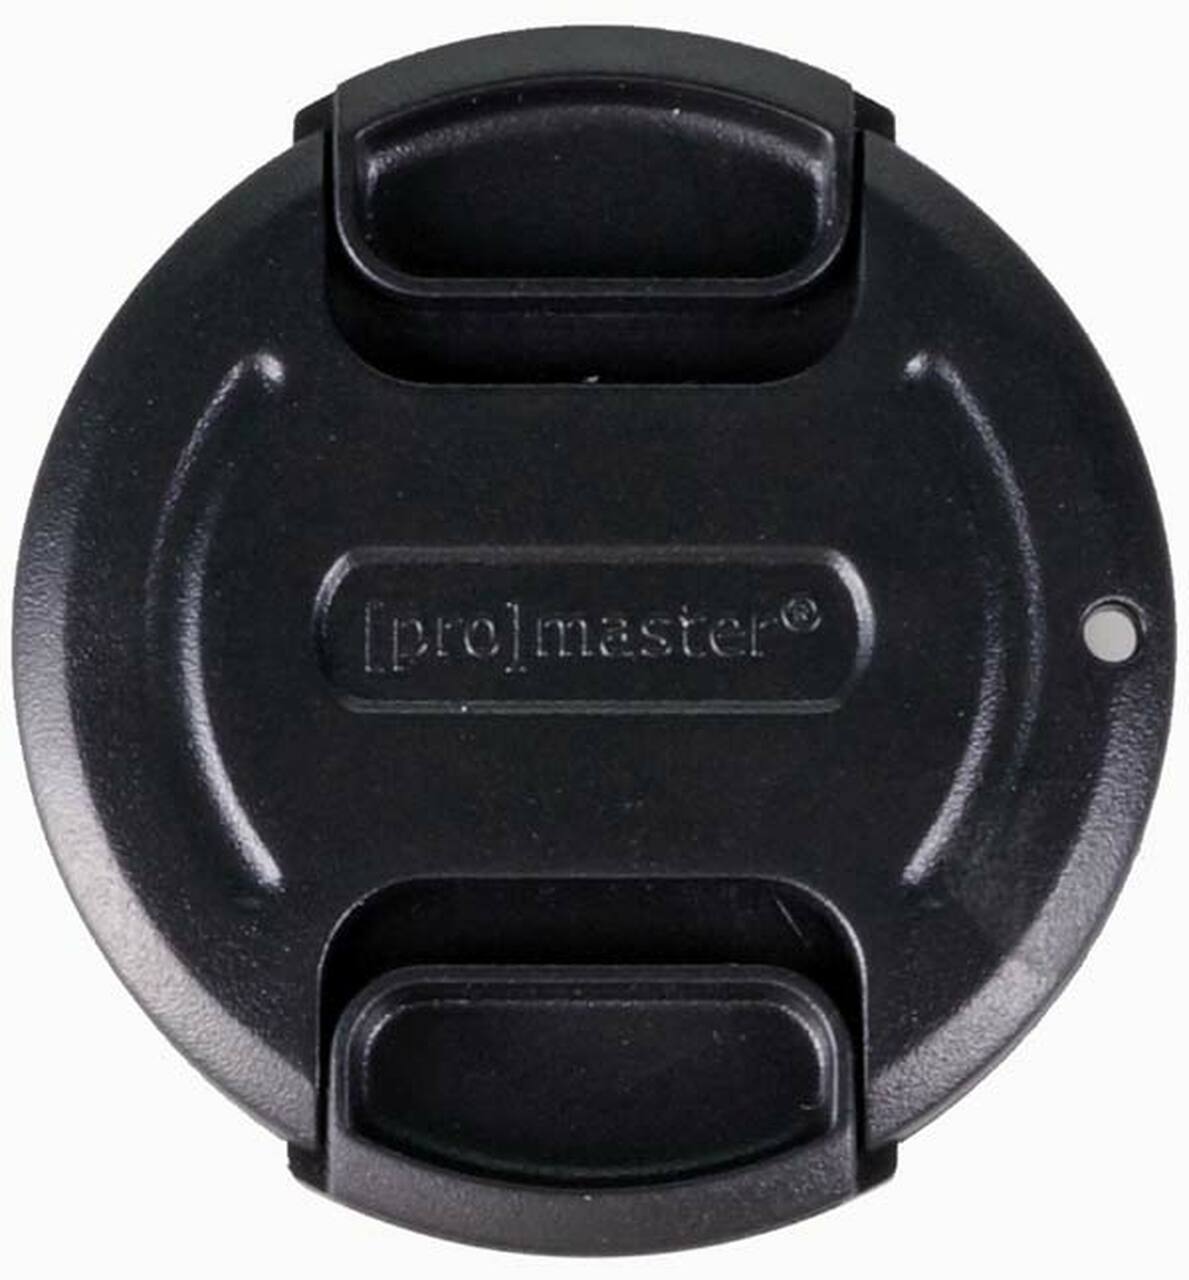 Promaster 1394 40.5mm Lens Cap